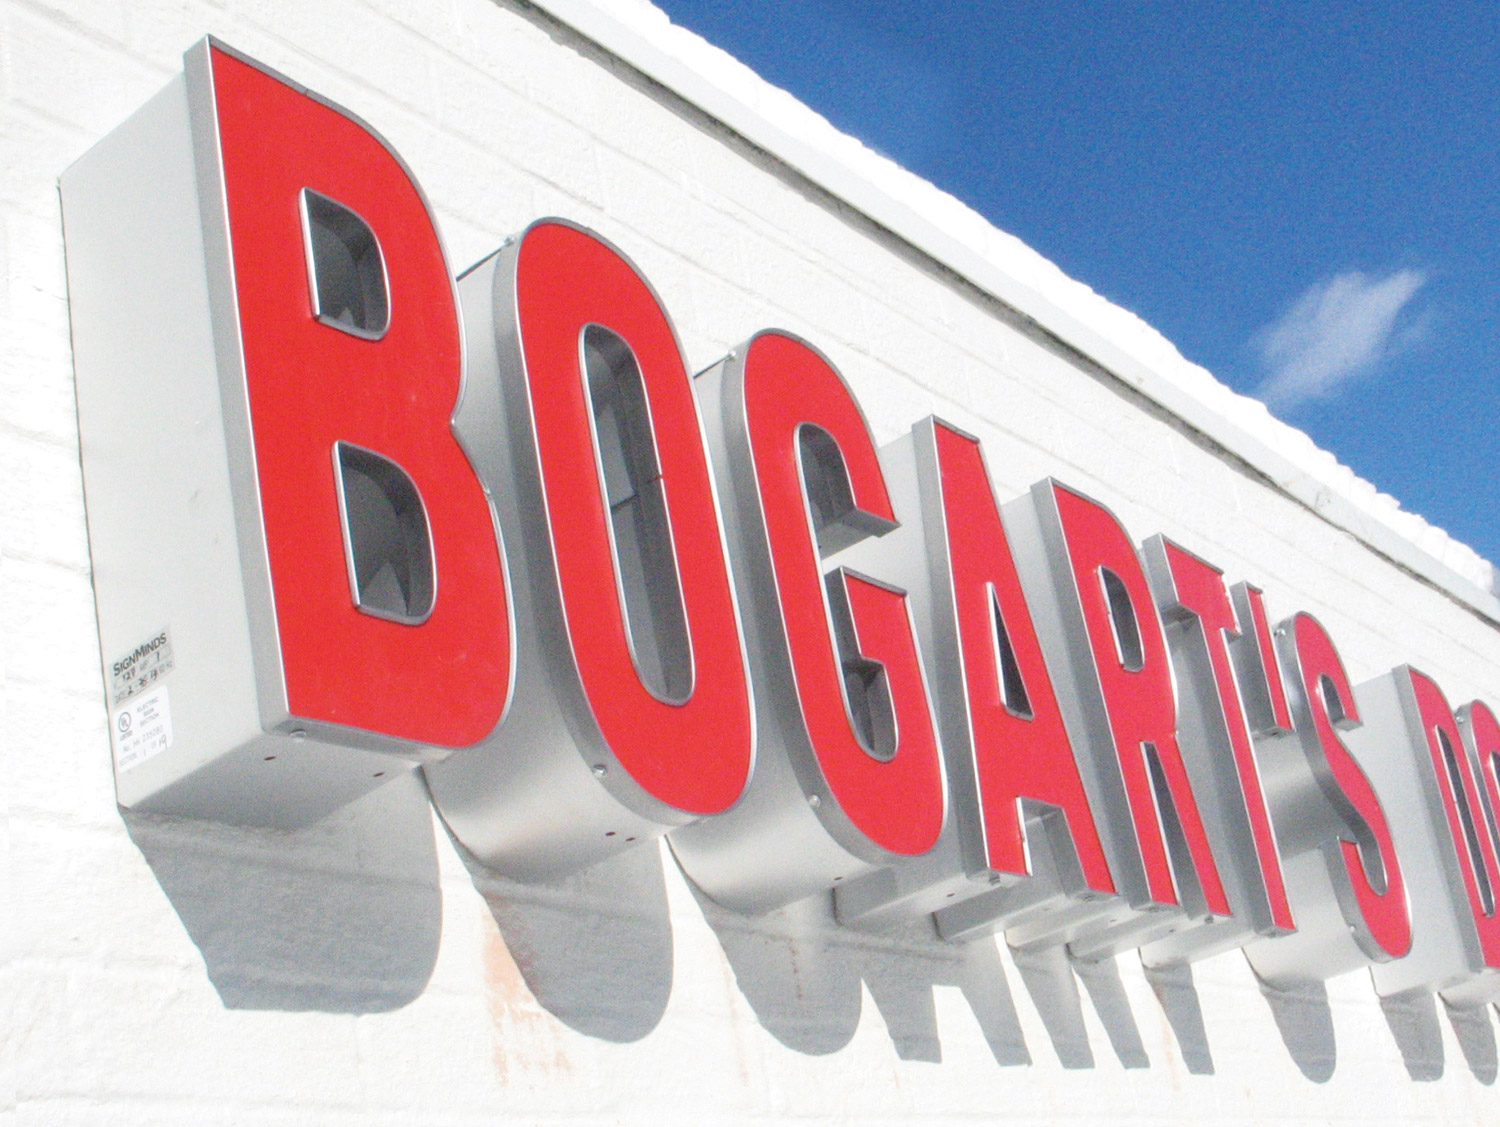 Bogarts-Doughnut-Co-Sign-03.jpg